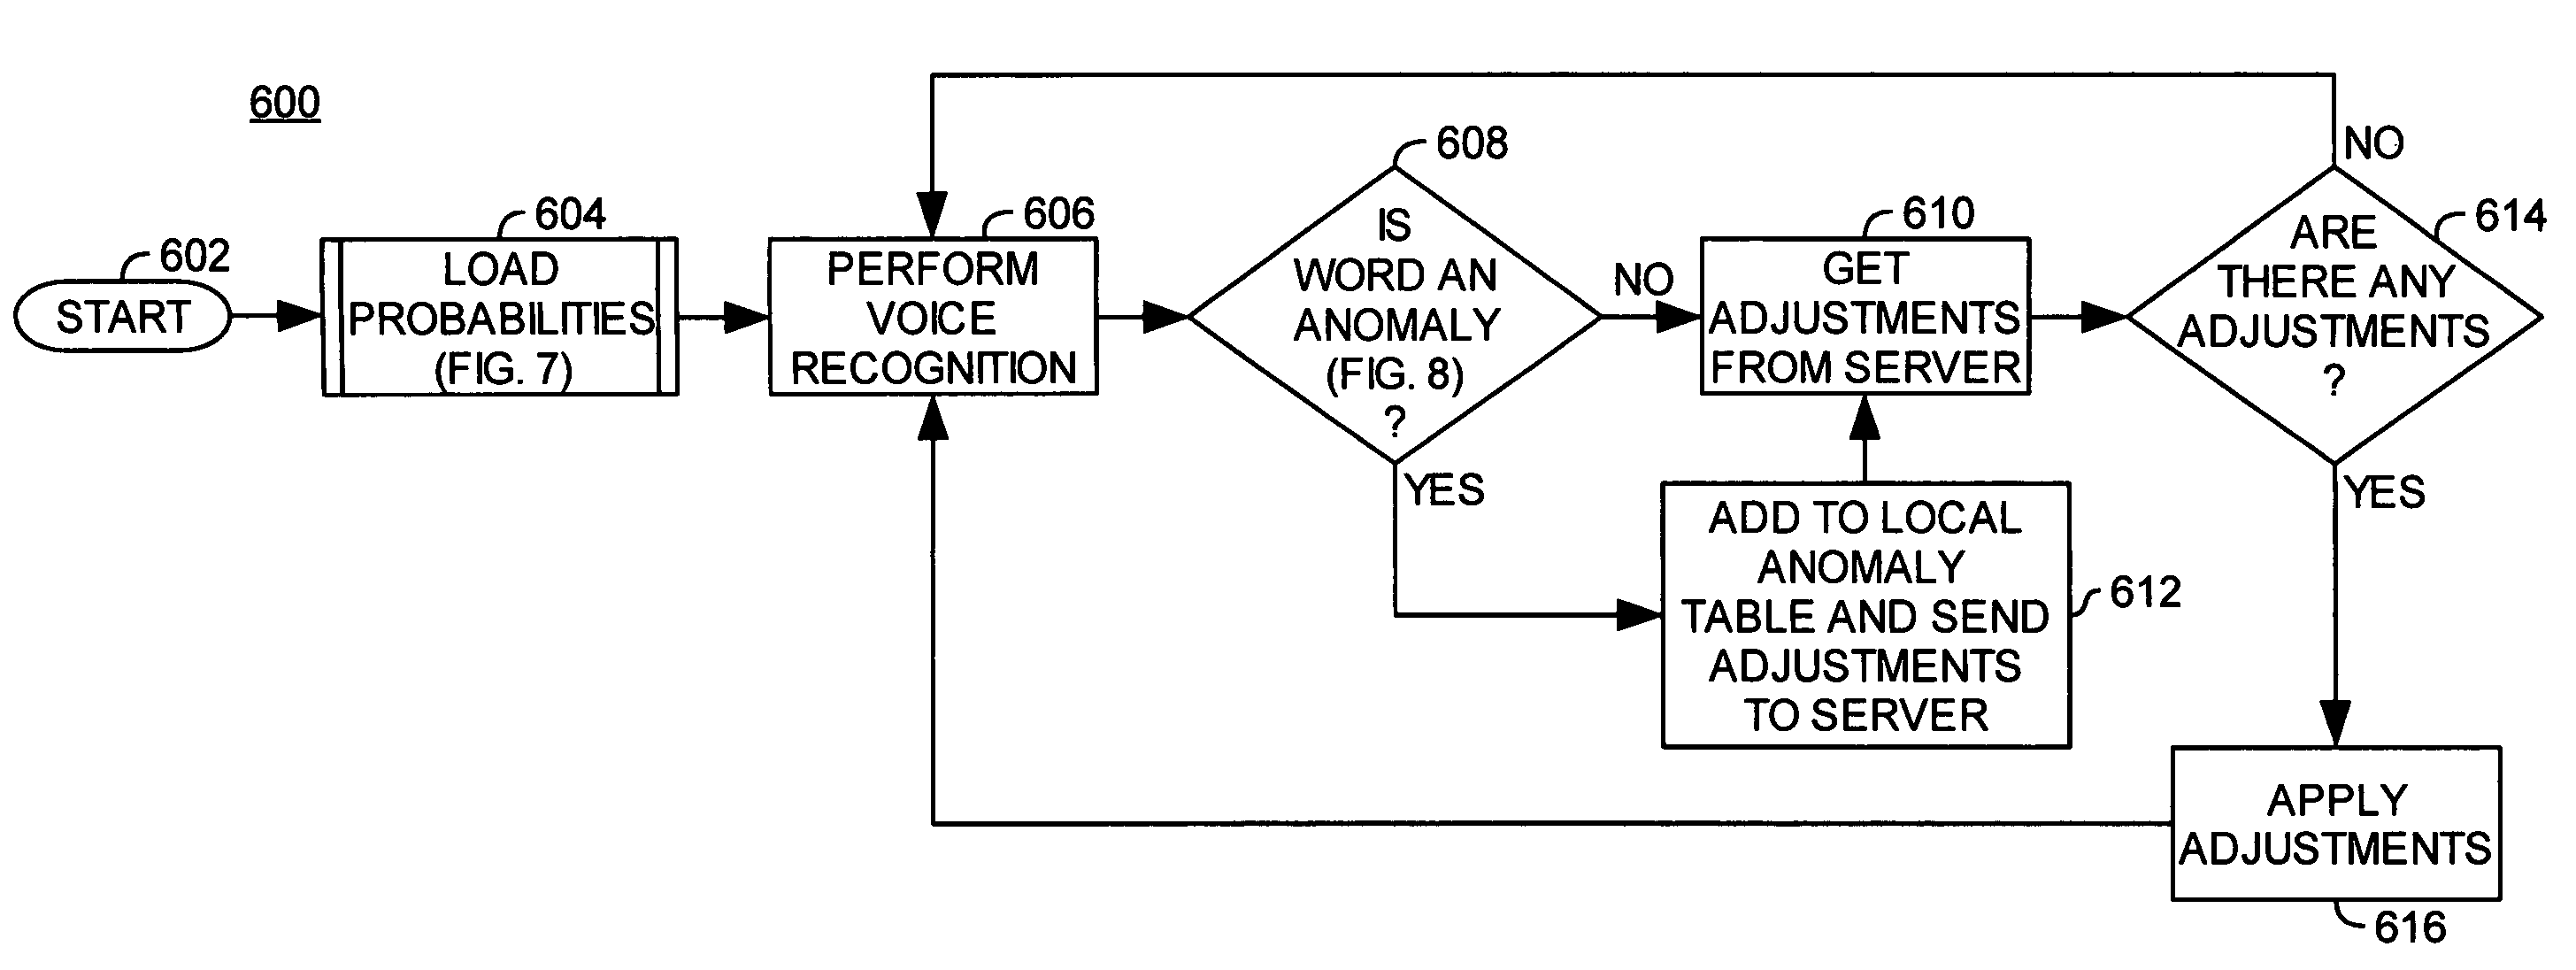 Voice language model adjustment based on user affinity